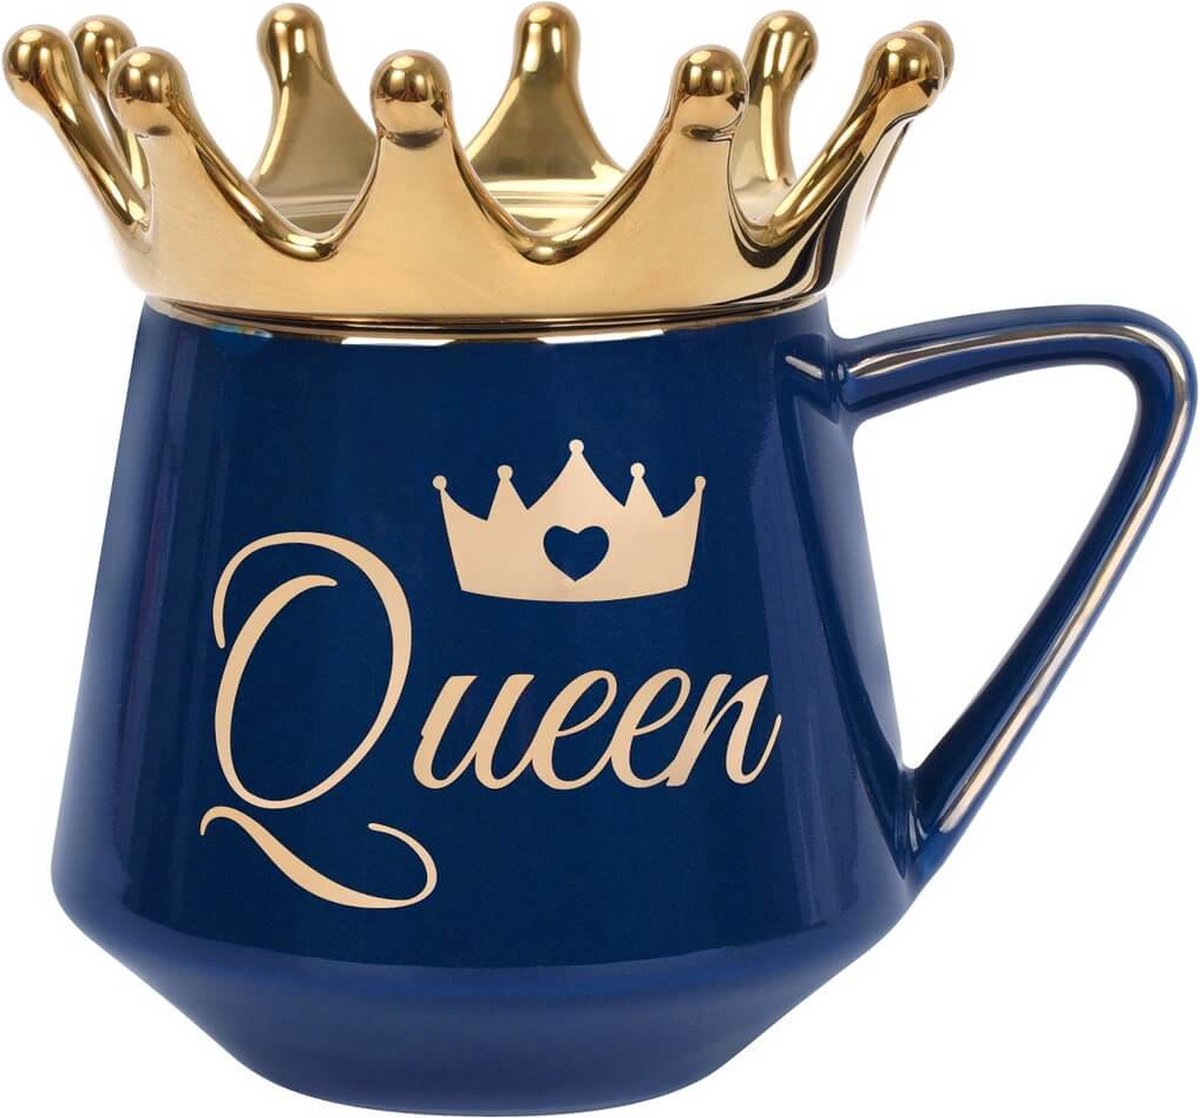 Coffee Lover - Mok Queen Blauw - met écht goud